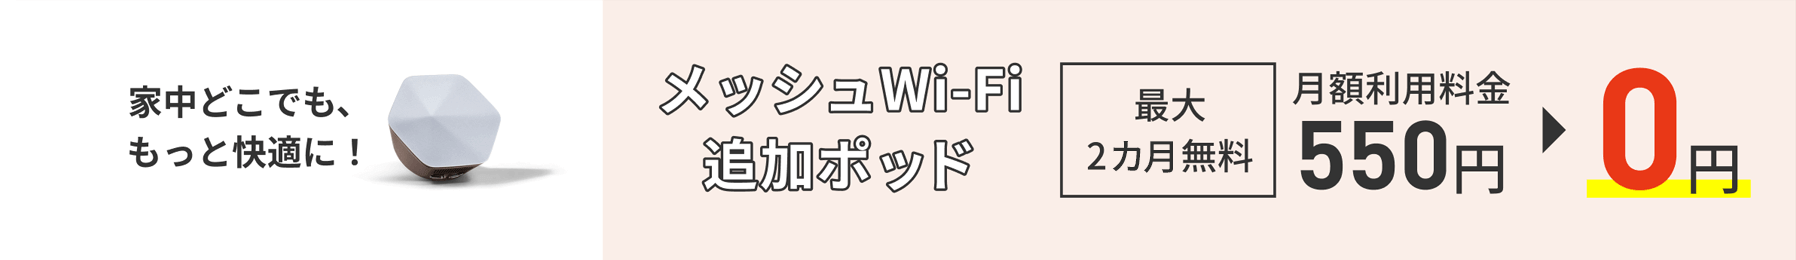 Fique mais confortável em qualquer lugar da sua casa! Pod adicional Mesh Wi-Fi Até 2 meses grátis Taxa de uso mensal 550 ienes → 0 ienes